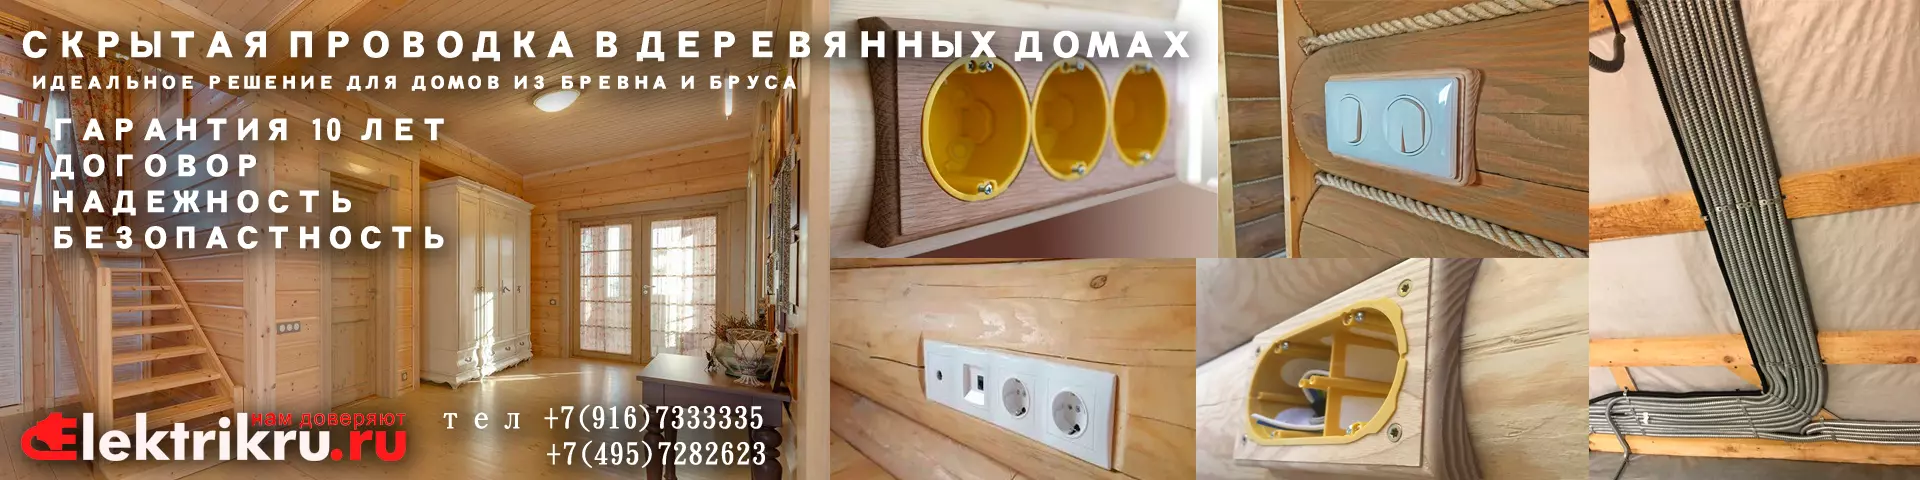 ЭЛЕКТРИКА в деревянном доме Москва под ключ — цены, отзывы.